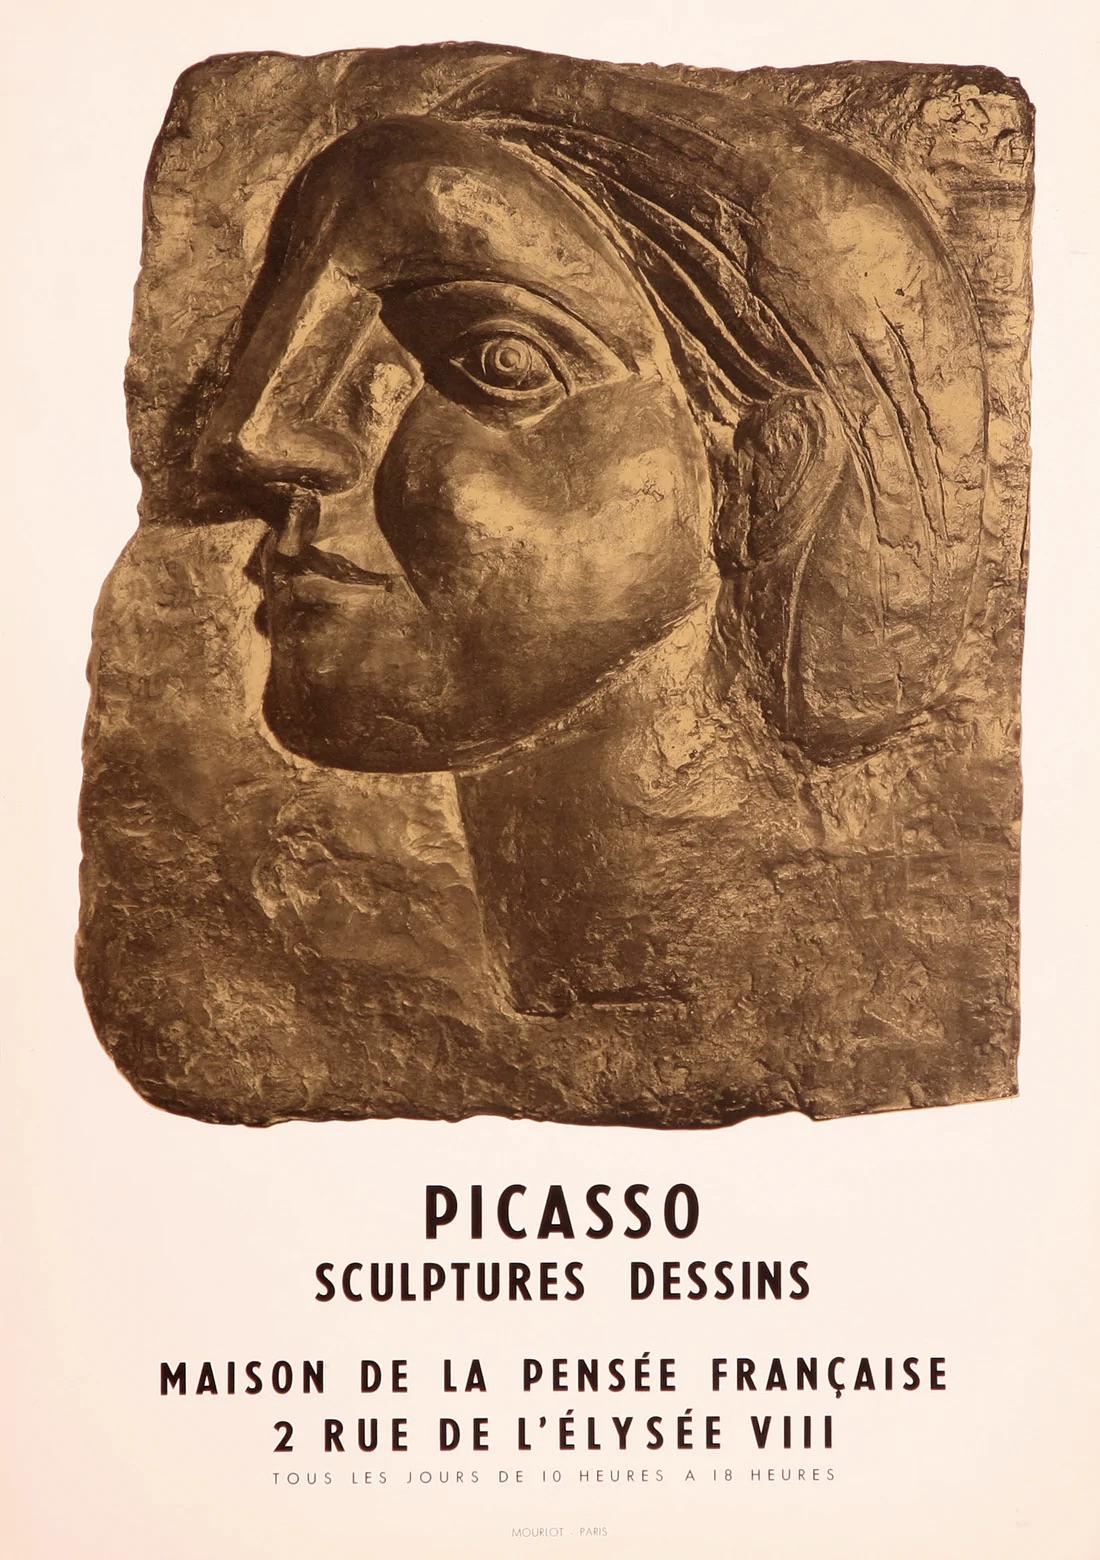 Tete De Femme de Profil (Marie-Therese) - Sculptures Dessins, 1958 - Print de (after) Pablo Picasso